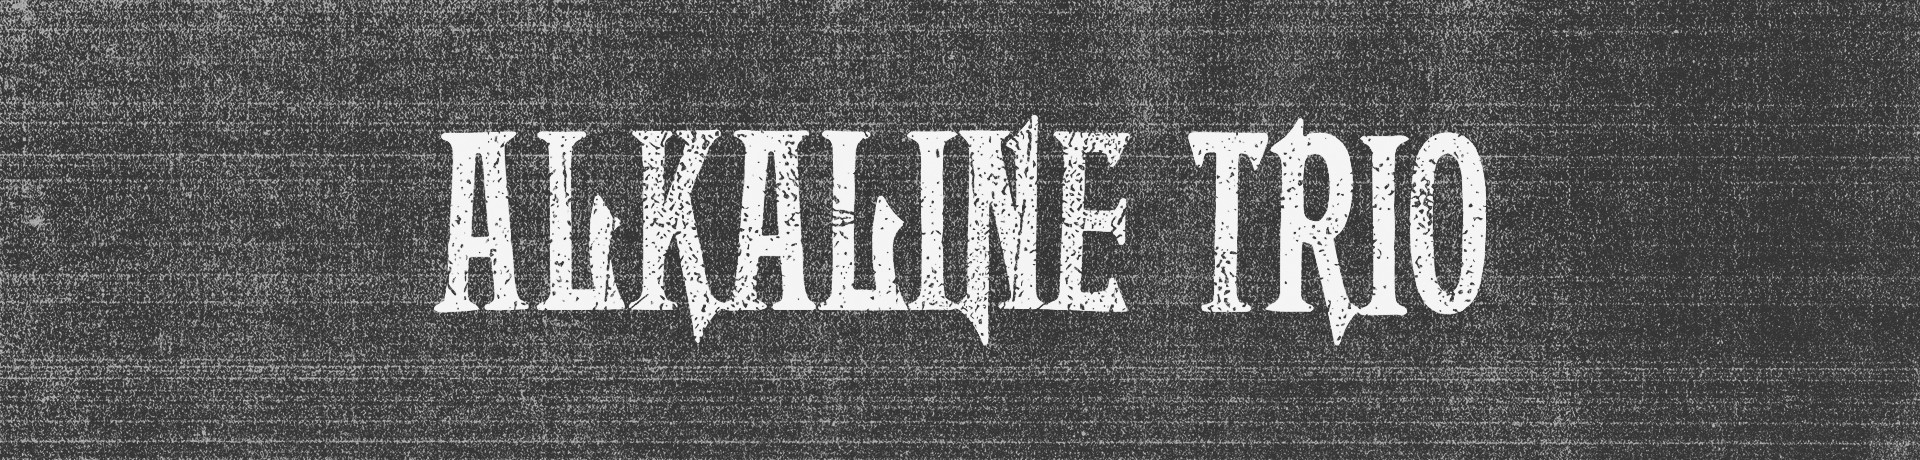 Alkaline Trio - Possessed Child